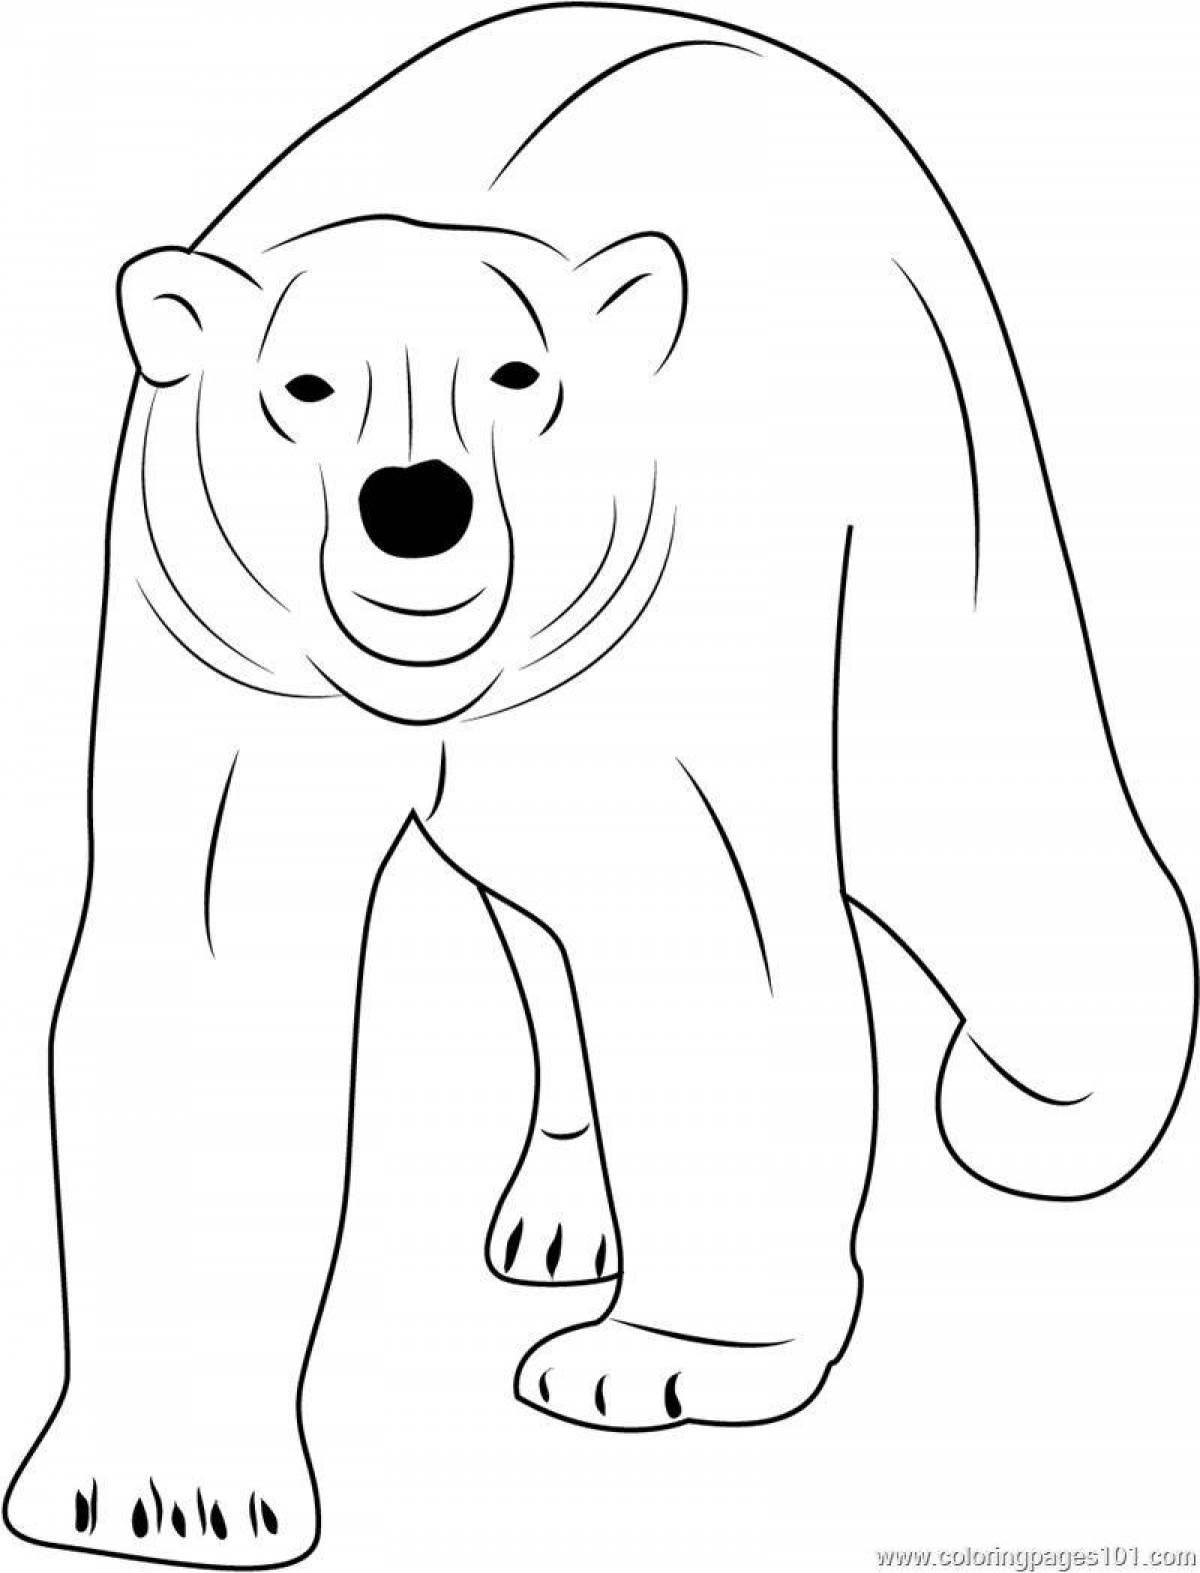 Сладкий рисунок белого медведя